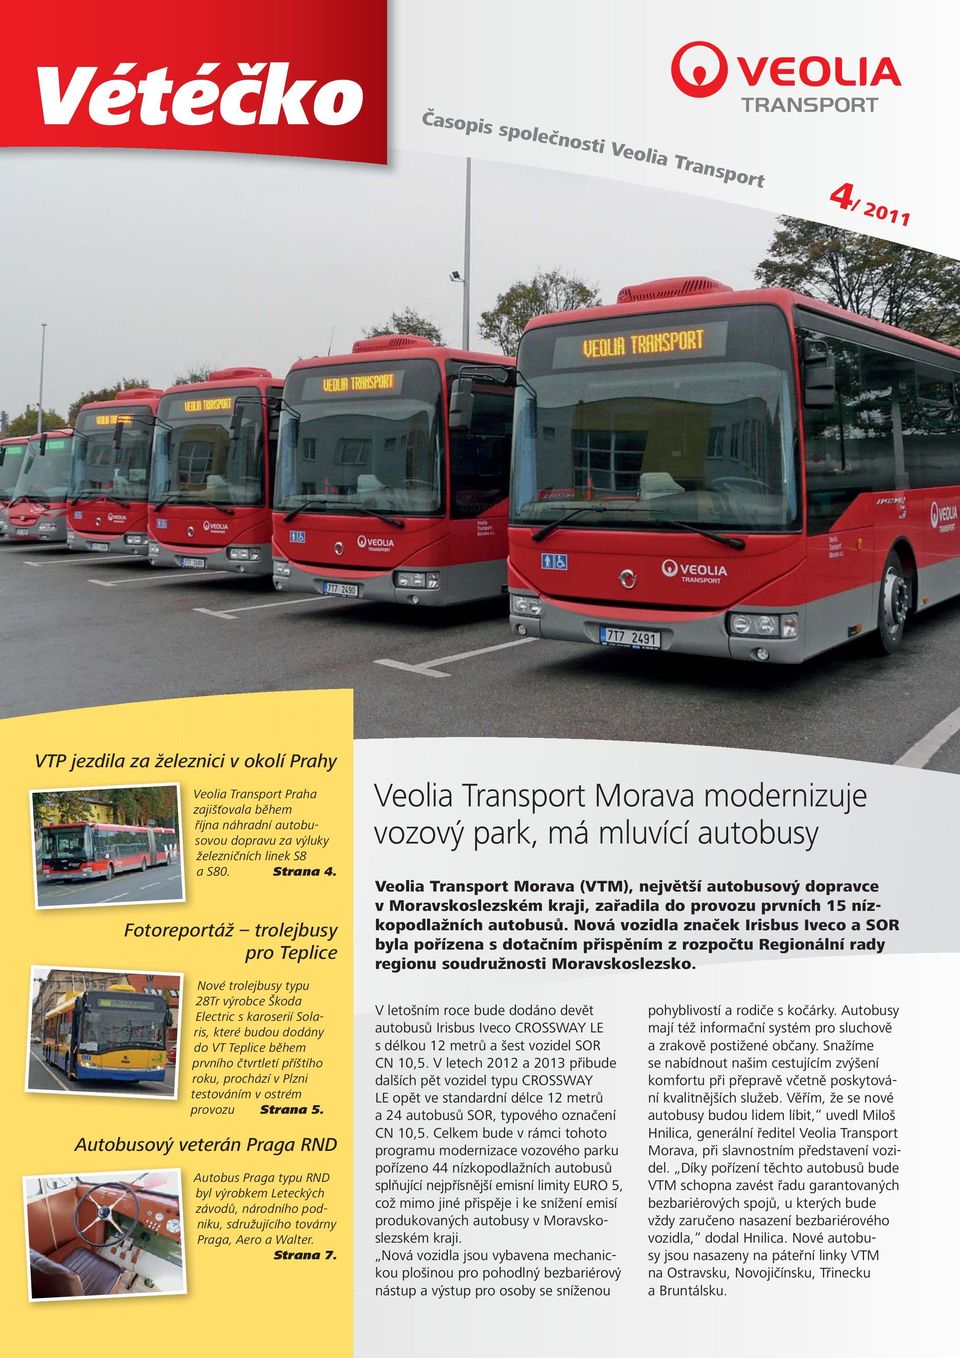 Vétéčko. Veolia Transport Morava modernizuje vozový park, má mluvící  autobusy. VTP jezdila za železnici v okolí Prahy - PDF Free Download